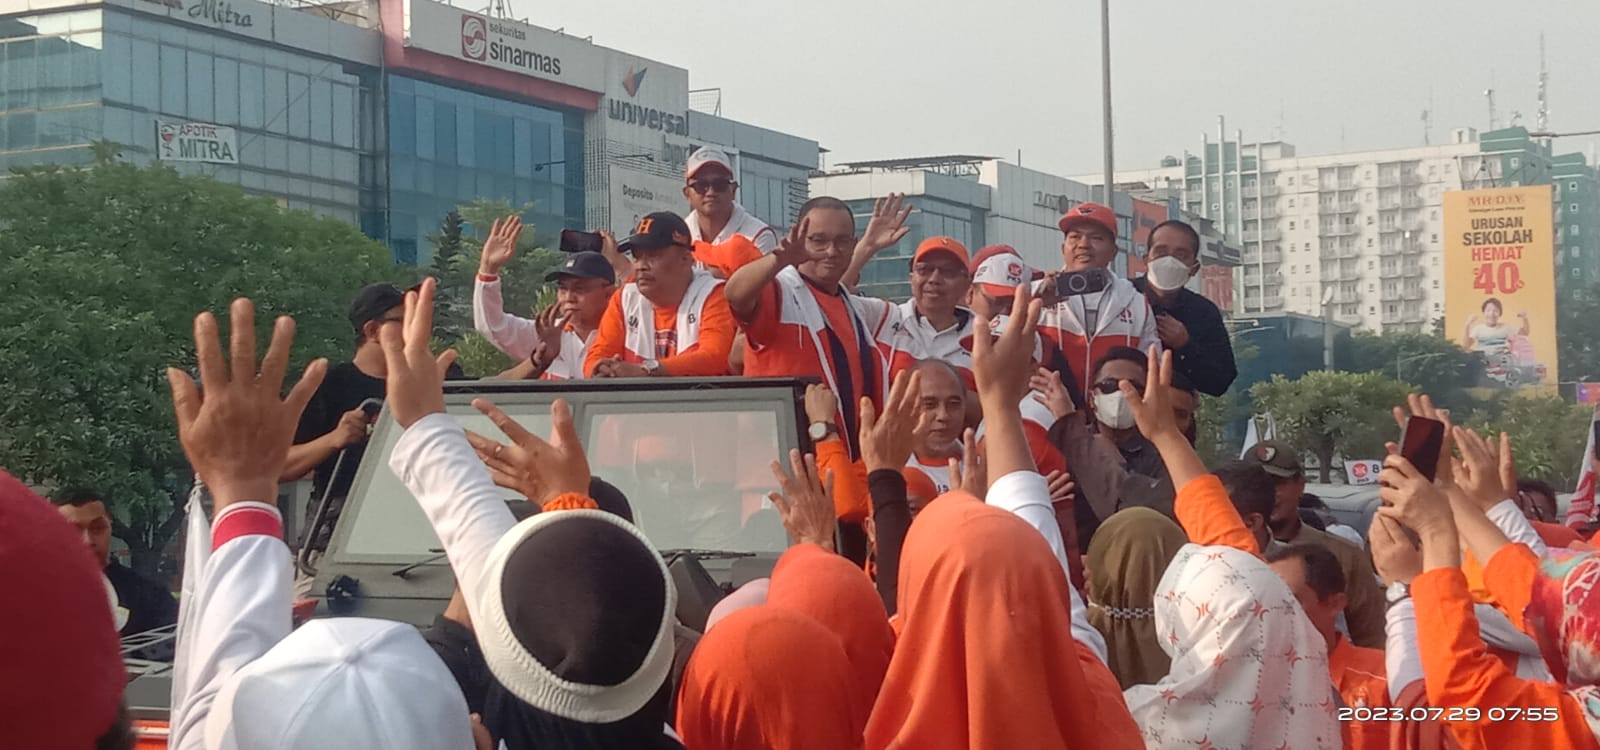 Anies Baswedan Didampingi Presiden PKS Ahmad Syaikhu Sapa Peserta Flashmob di Kota Bekasi